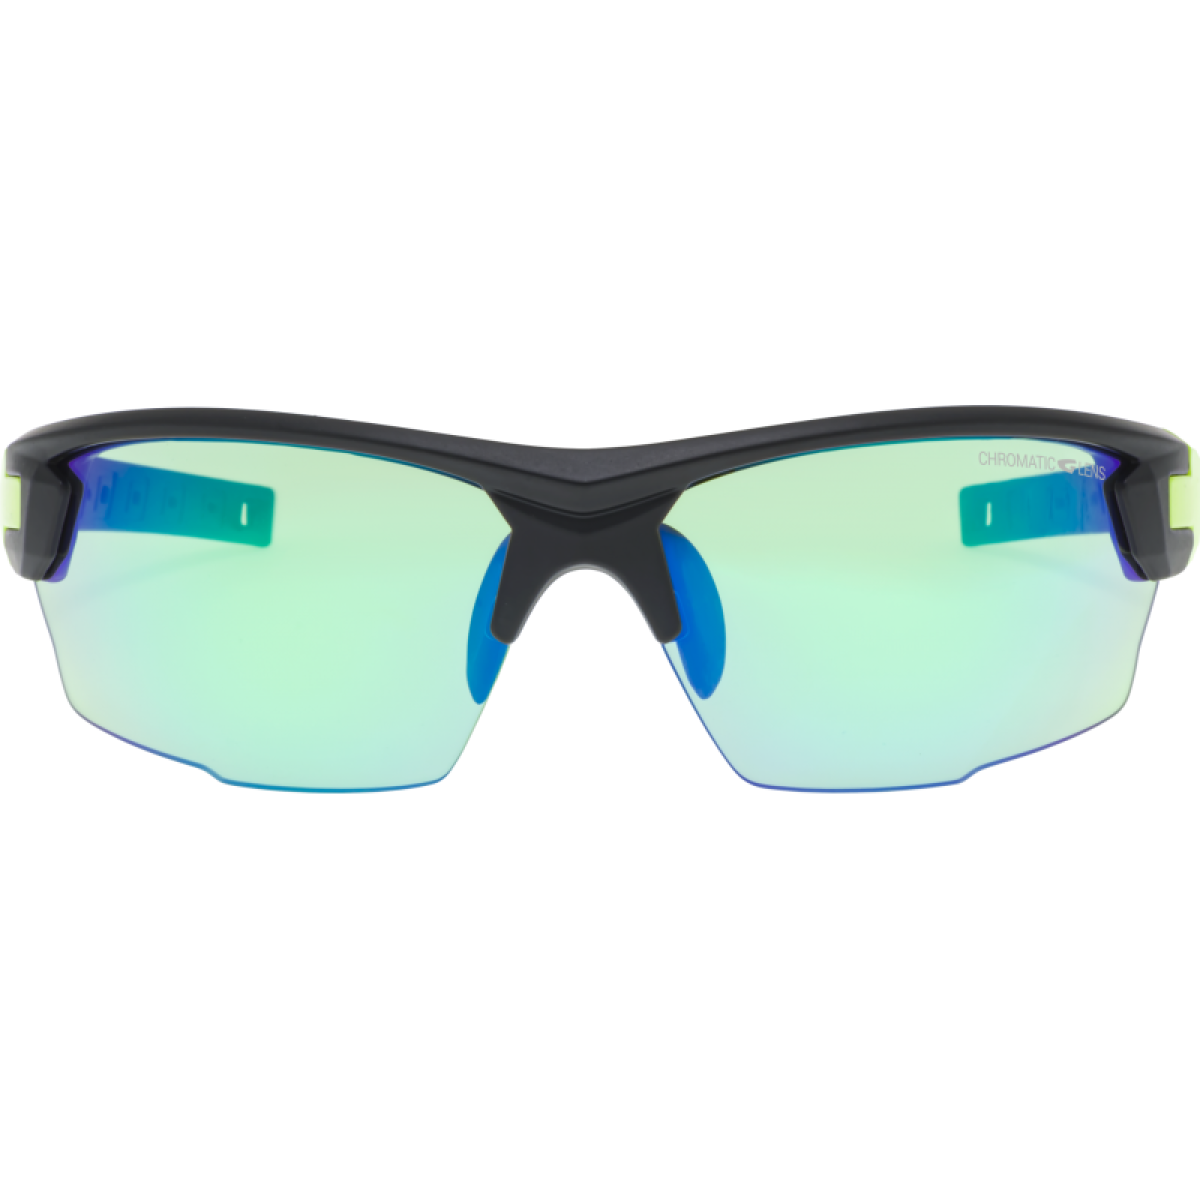 Photochromic Sunglasses E544-2 GOG - view 3